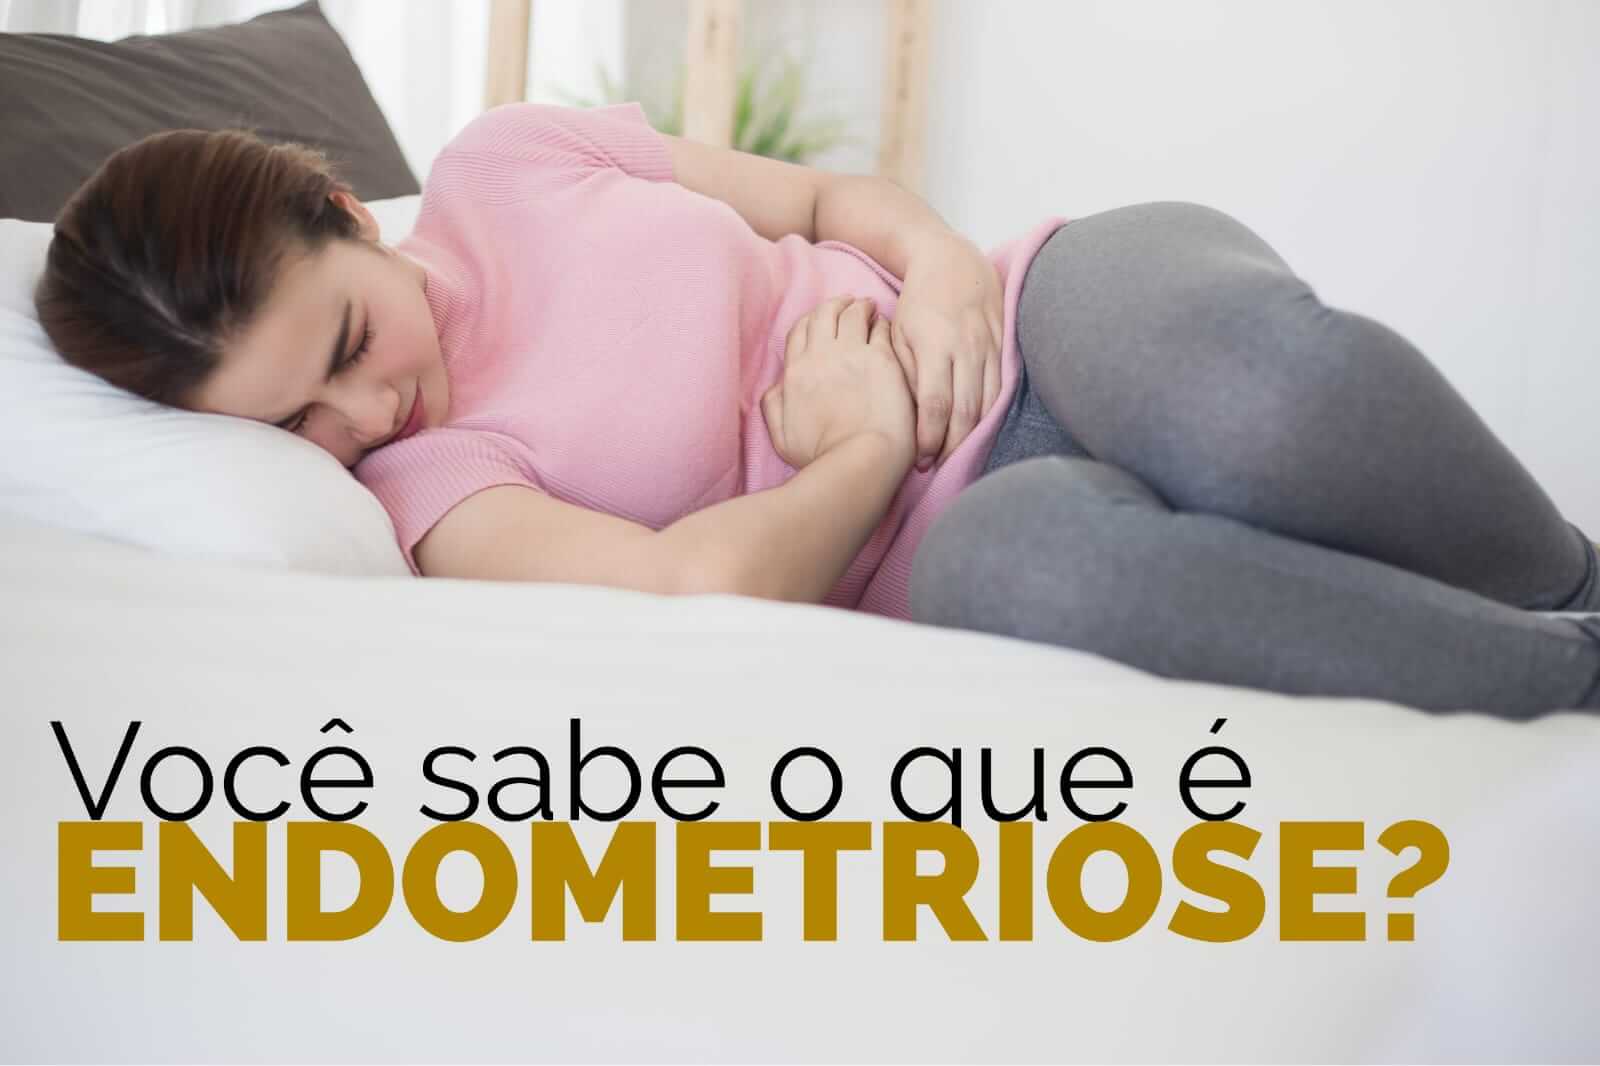 Endometriose nos dias de Hoje - Implicações após novos trabalhos.